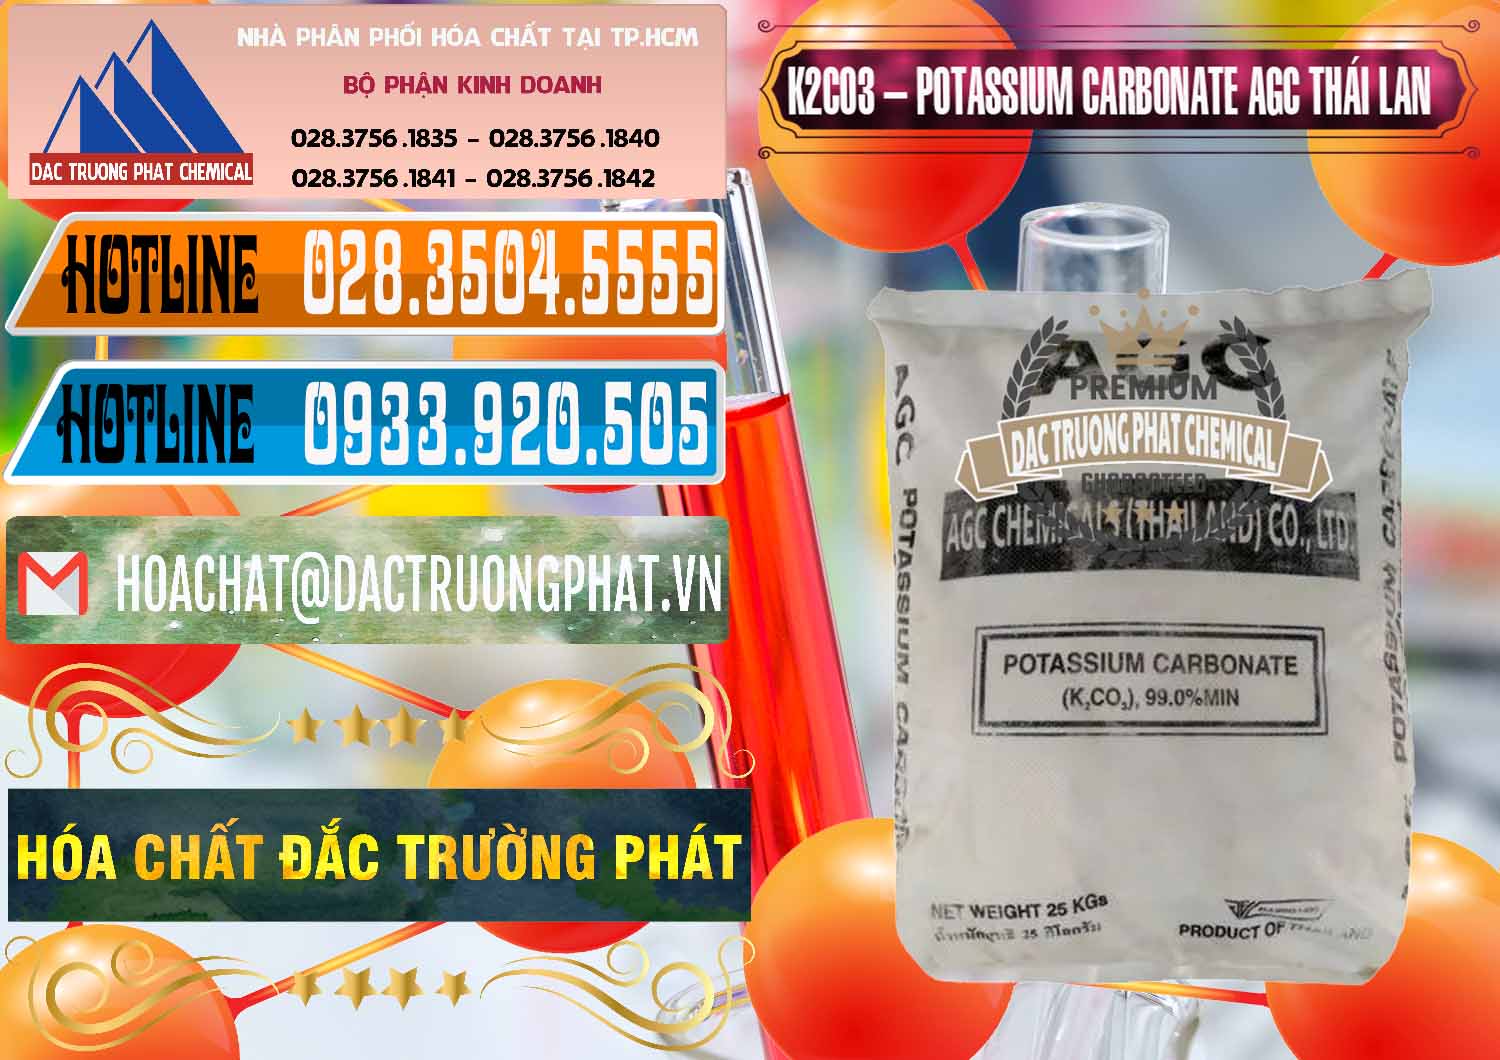 Cty chuyên cung cấp & bán K2Co3 – Potassium Carbonate AGC Thái Lan Thailand - 0471 - Chuyên cung cấp - phân phối hóa chất tại TP.HCM - stmp.net